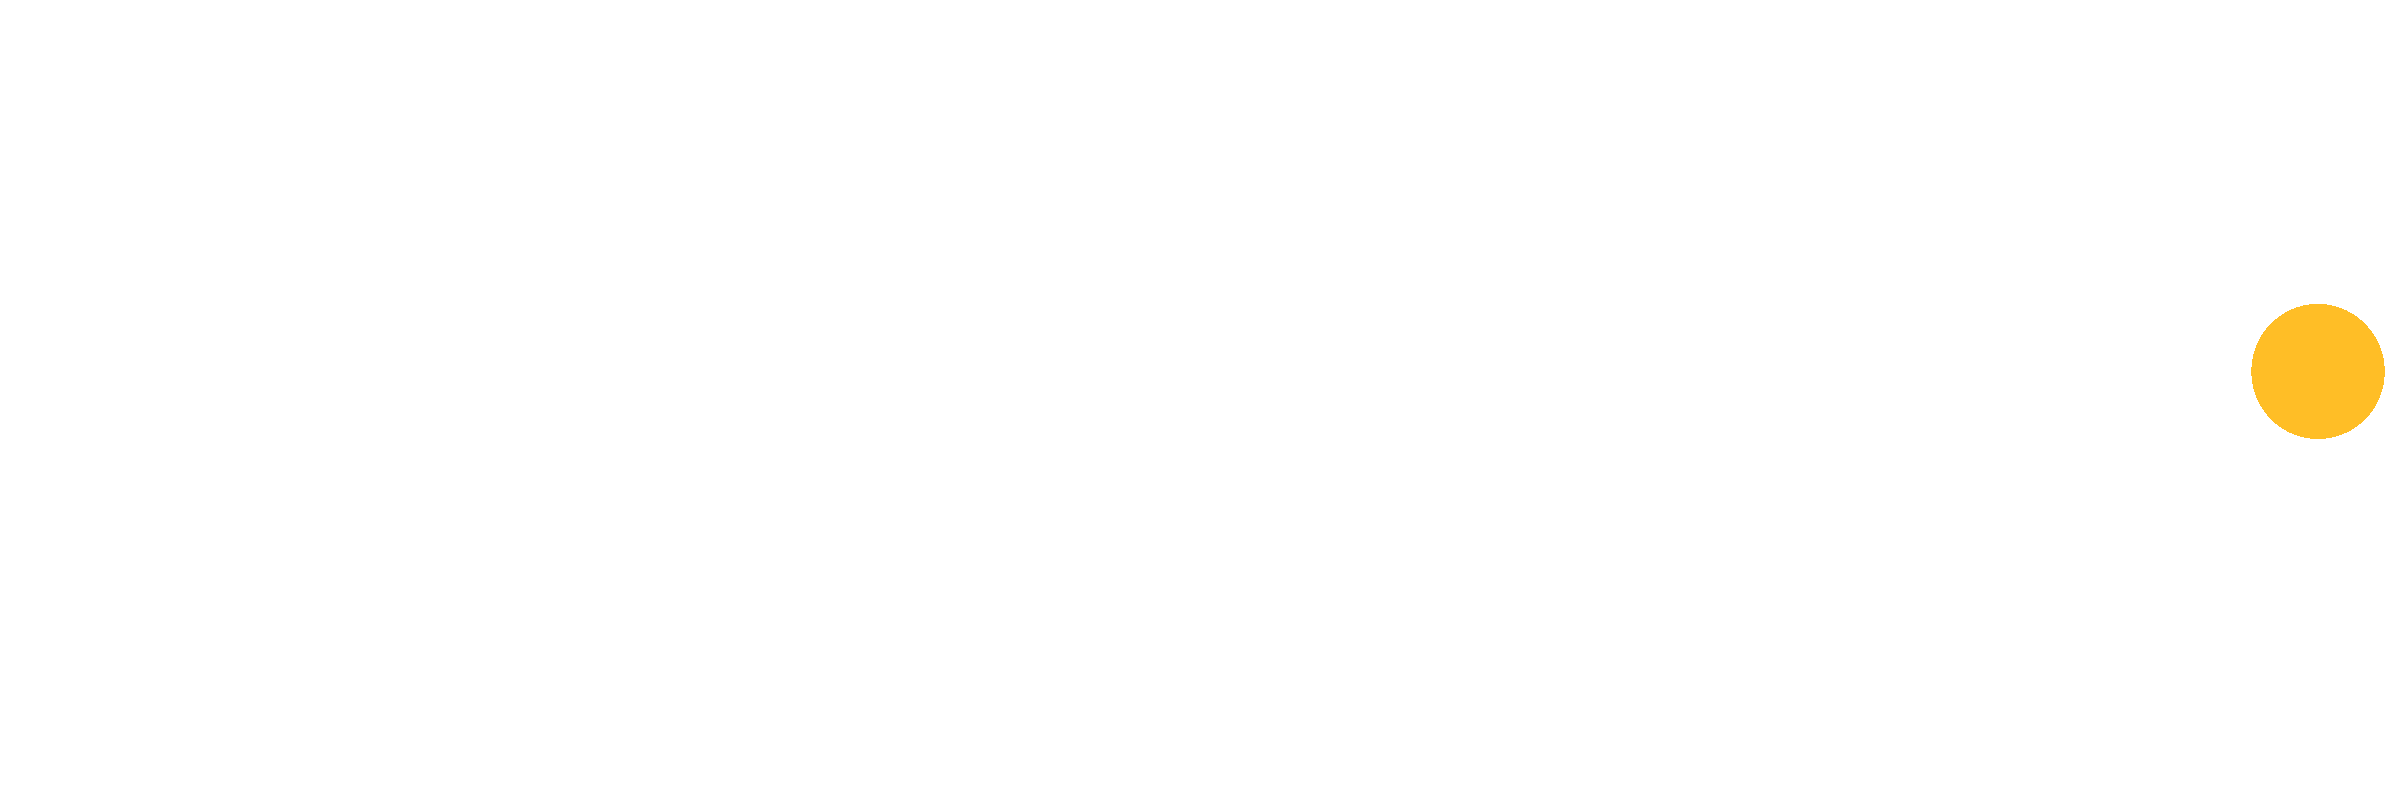 Optimum TV logo